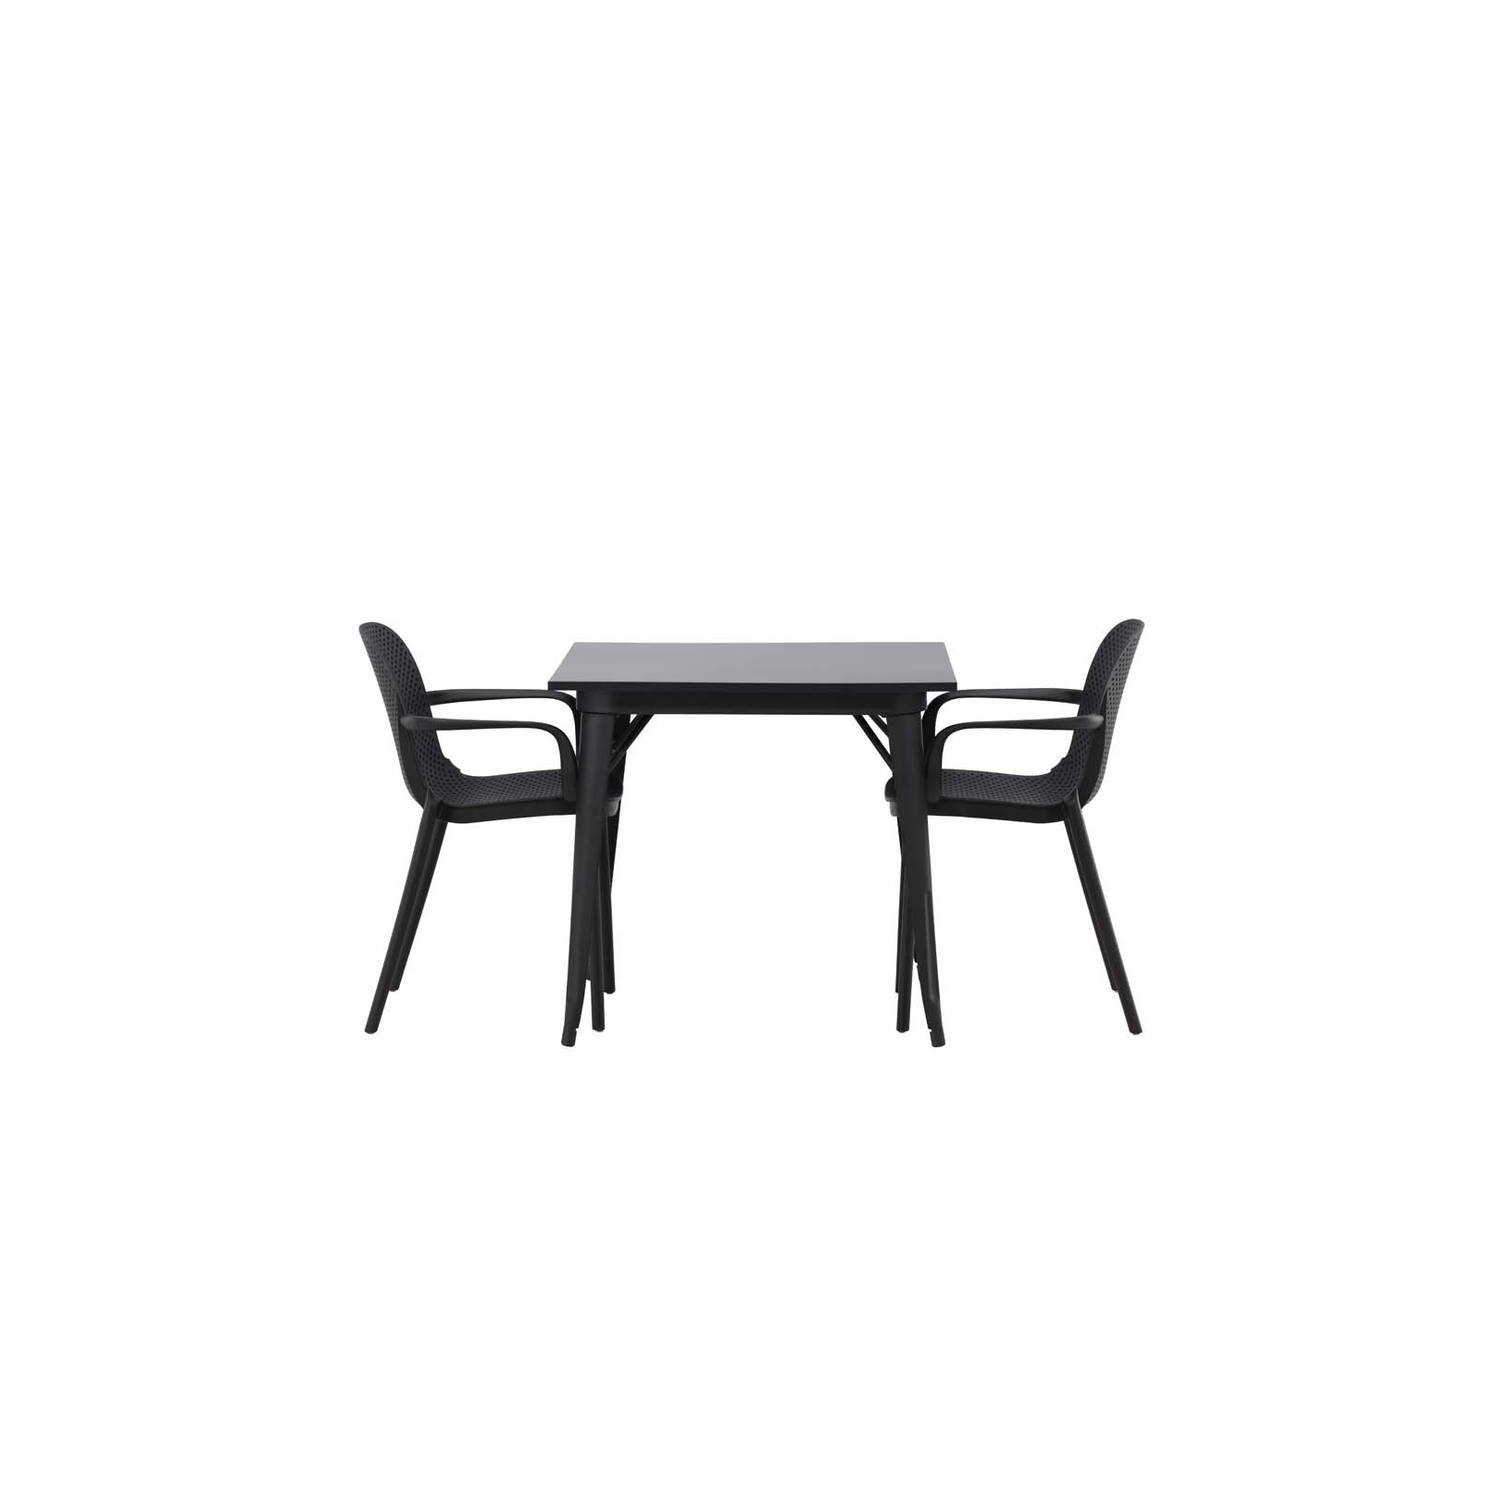 Tempe eethoek tafel zwart en 2 baltimore stoelen zwart.